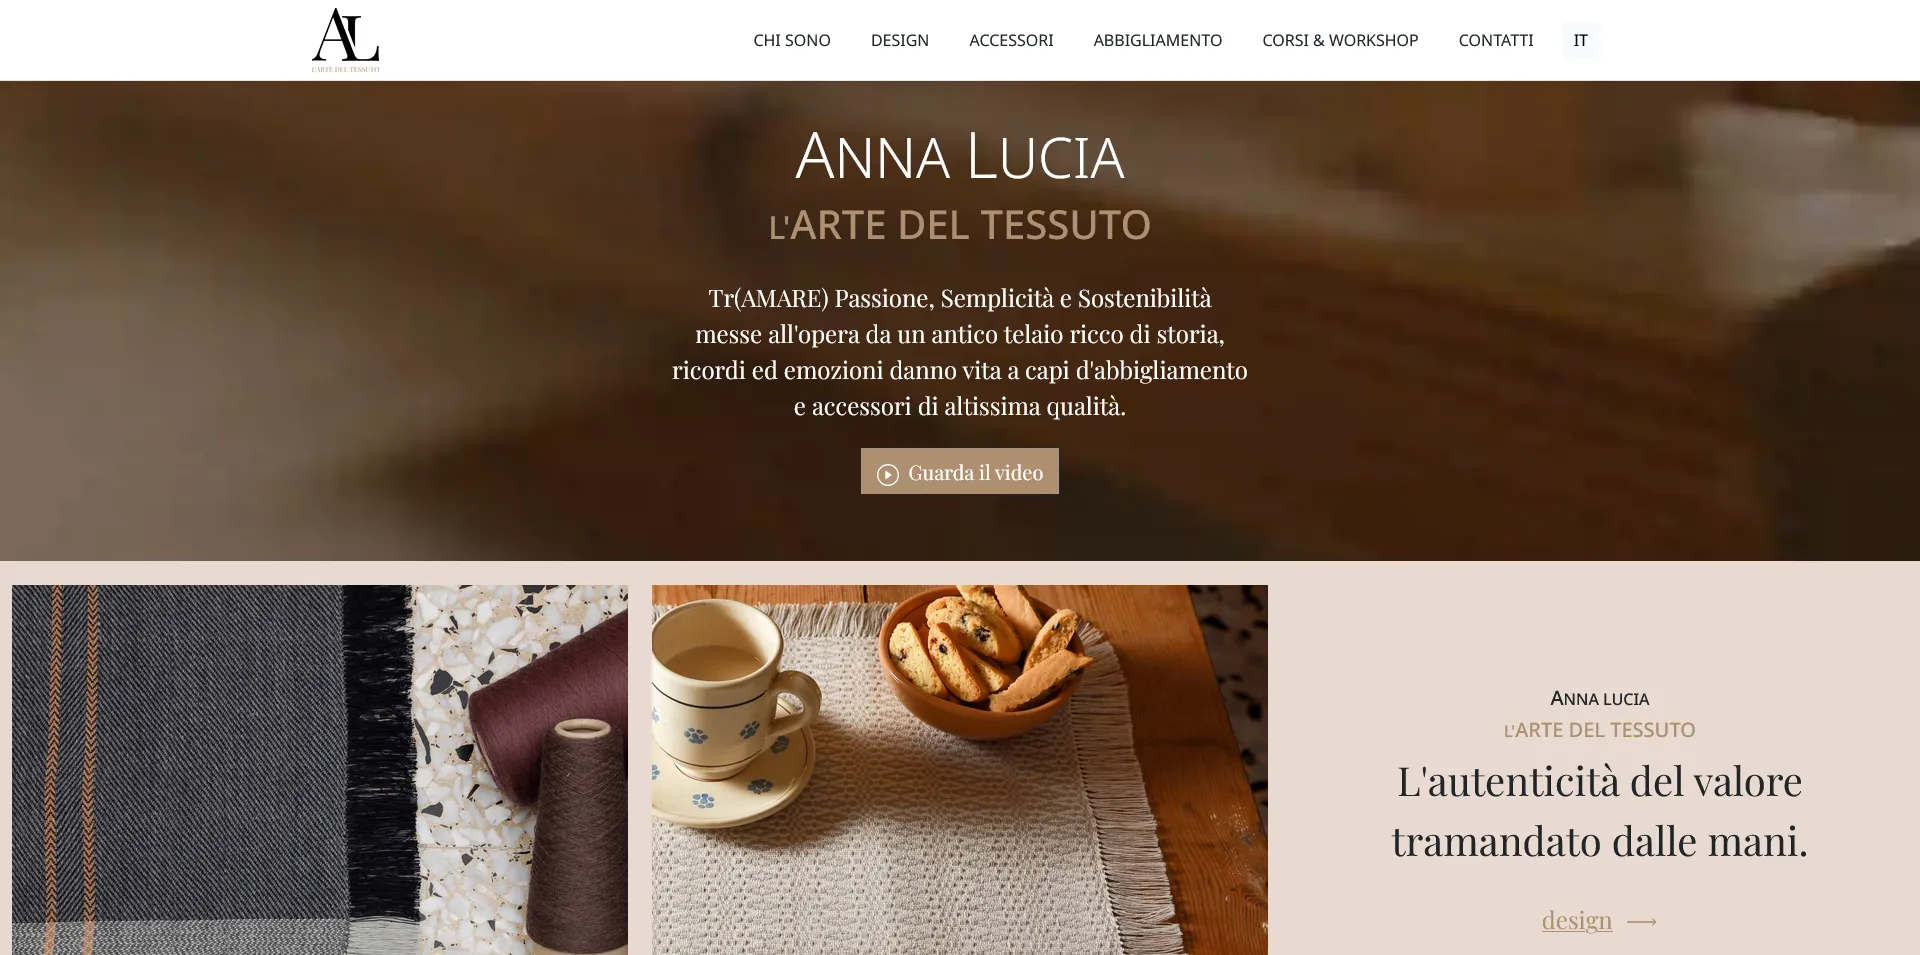 Realizzazione siti webo | Quokka Web Agency Lecce